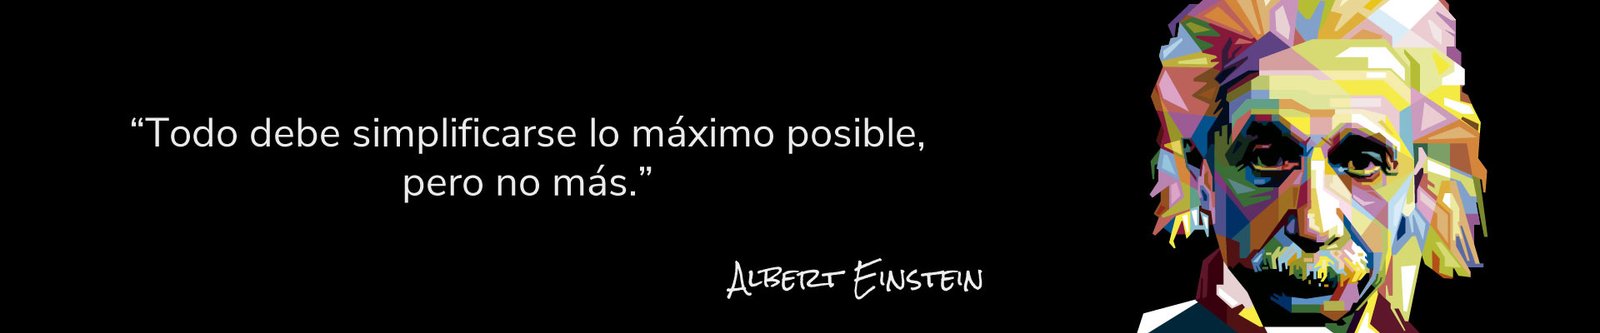 Frases célebres Albert Einstein - Simplificar